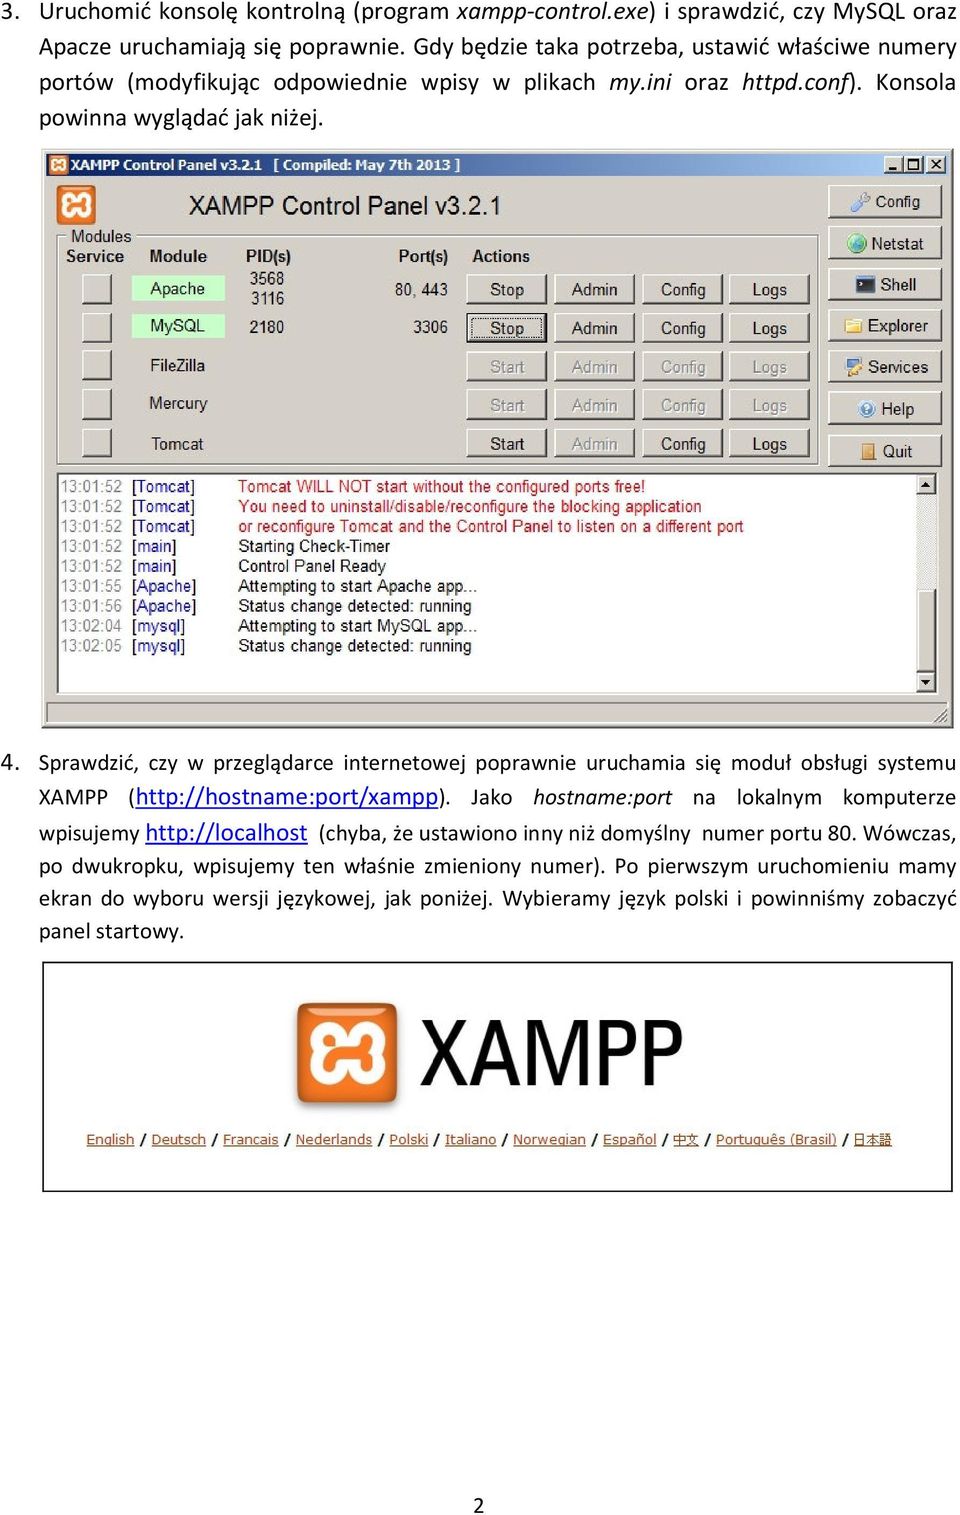 Sprawdzić, czy w przeglądarce internetowej poprawnie uruchamia się moduł obsługi systemu XAMPP (http://hostname:port/xampp).